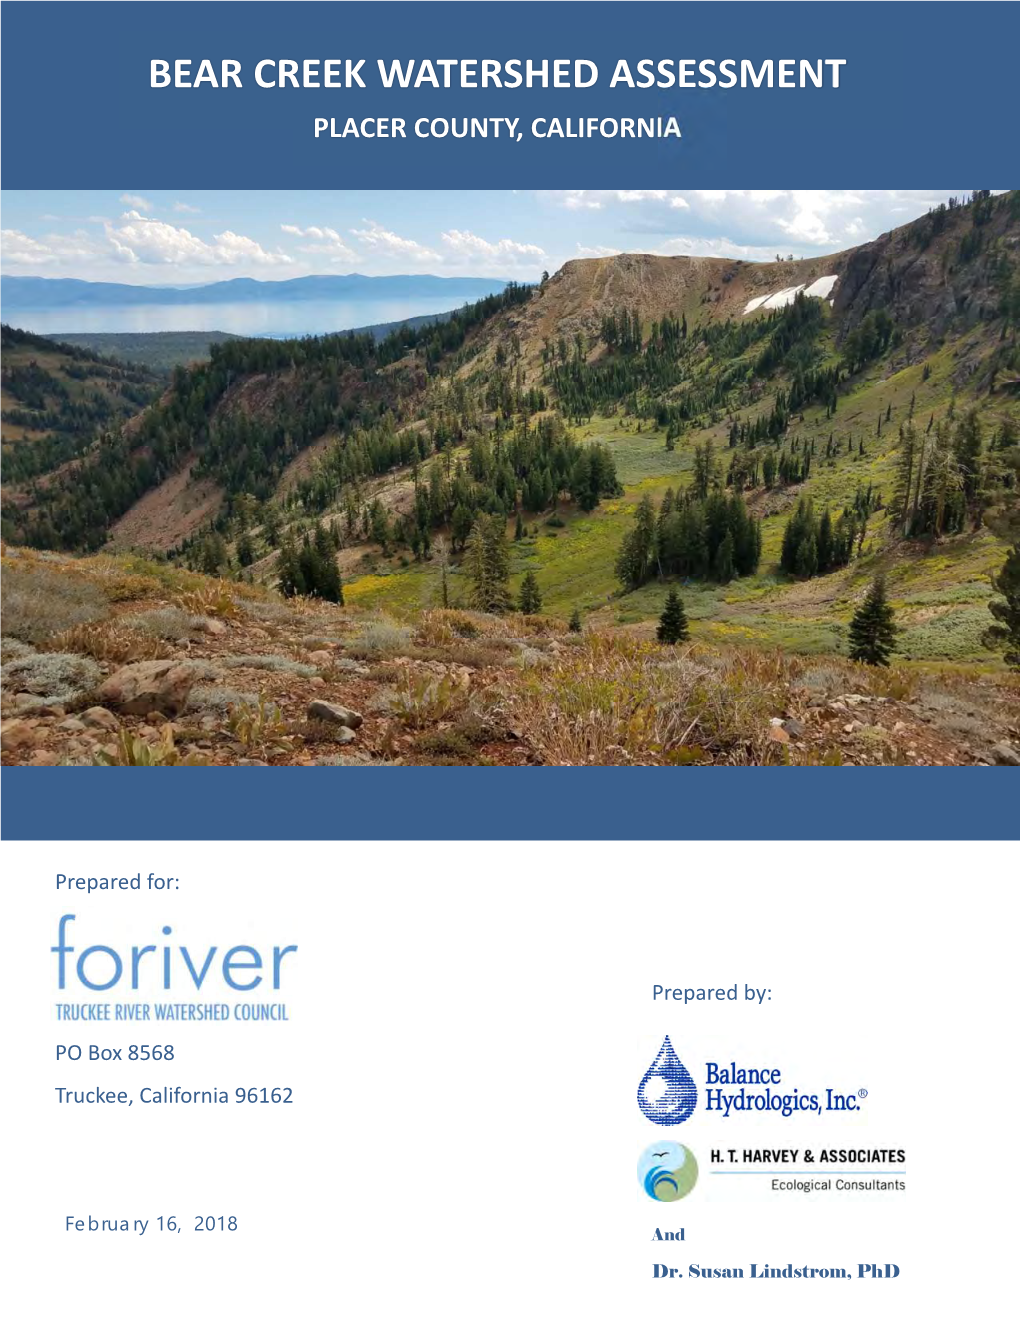 Bear Creek Watershed Assessment Report